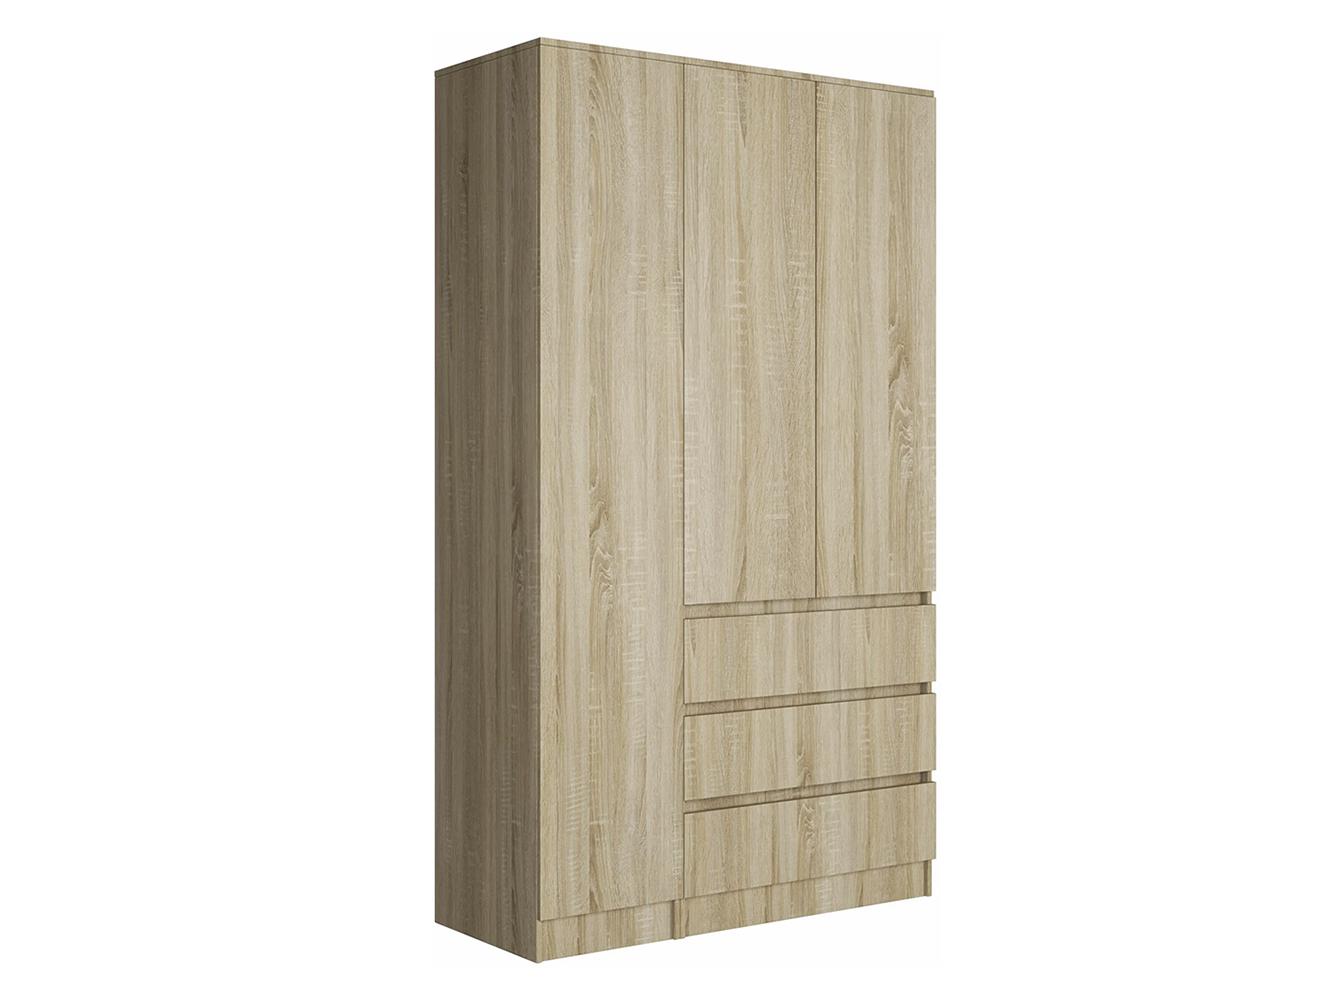 Изображение товара Распашной шкаф Мальм 314 oak ИКЕА (IKEA), 120x50x200 см на сайте adeta.ru